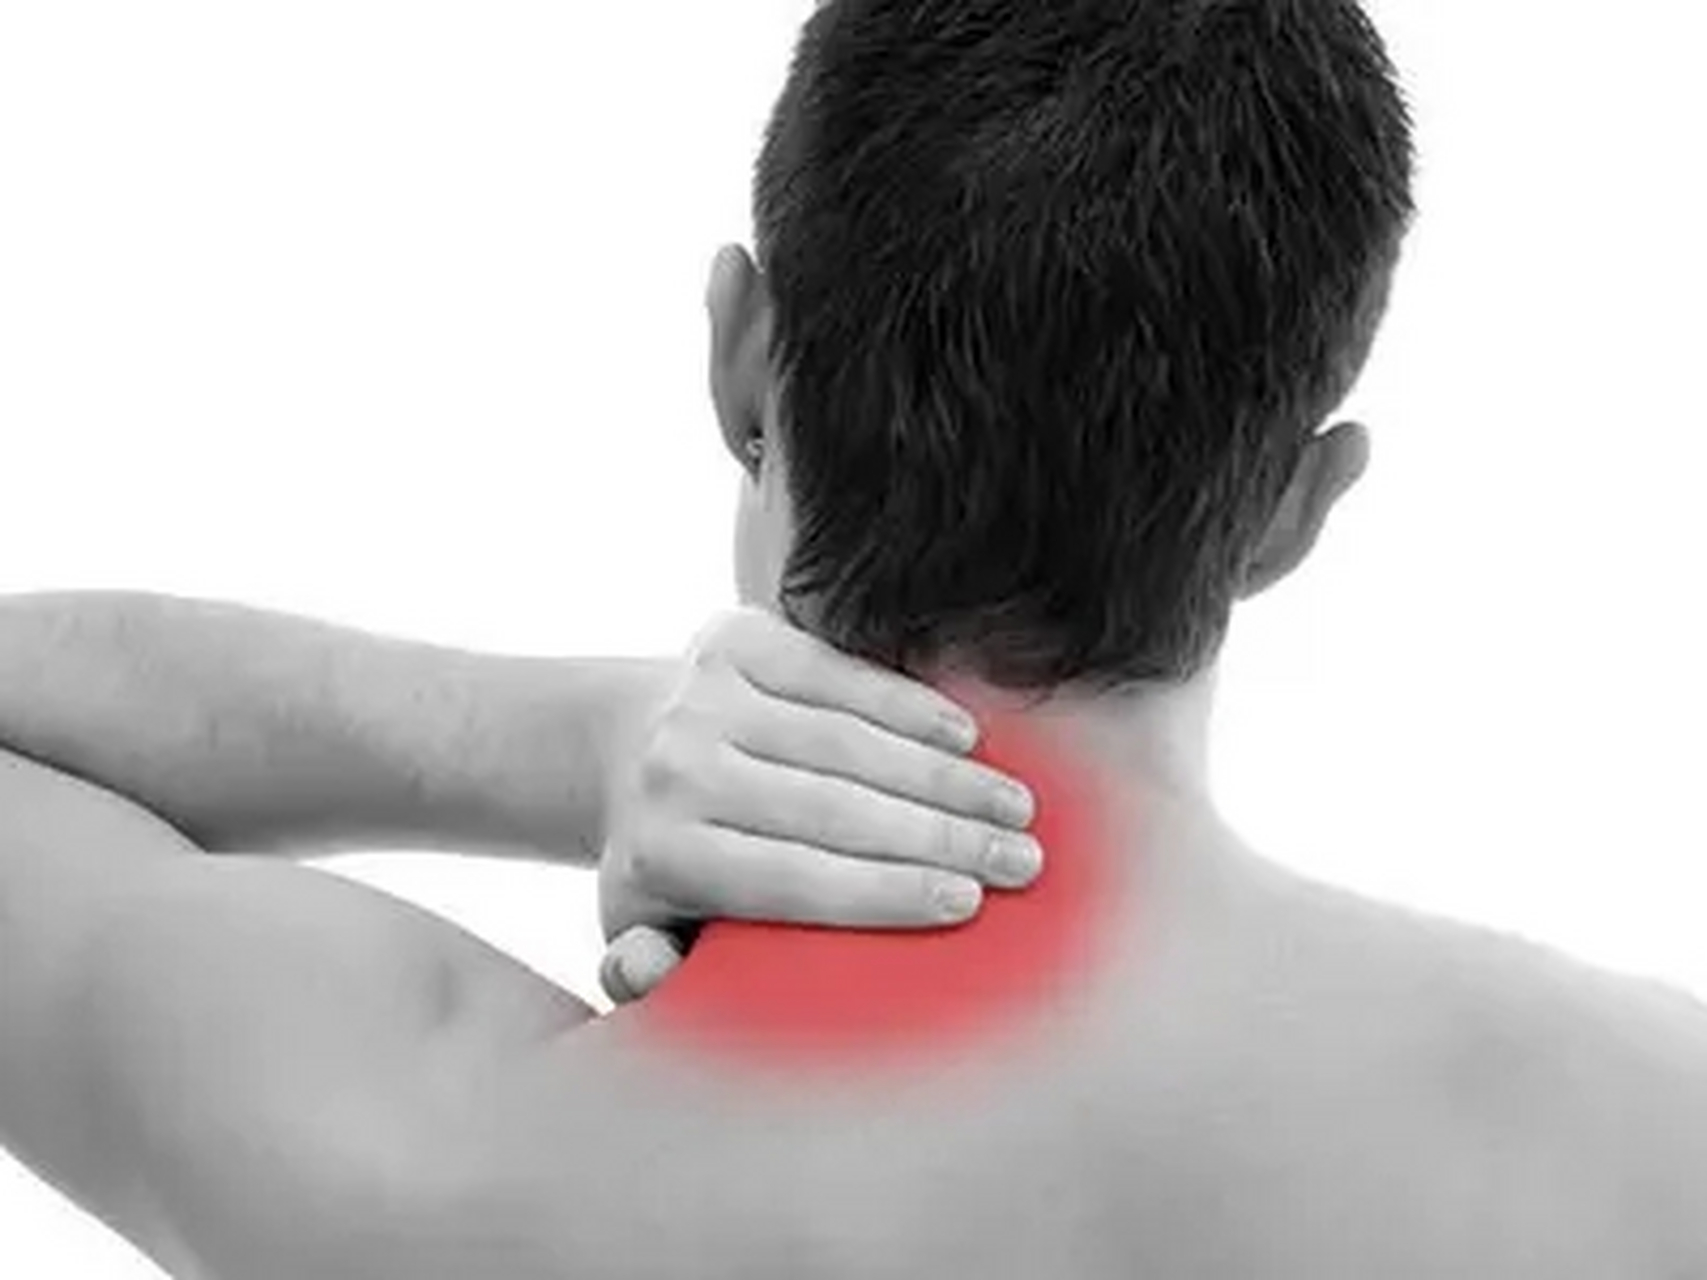 神经根型颈椎病:主要出现颈肩部疼痛和手指麻木感,晚间痛重,影响休息